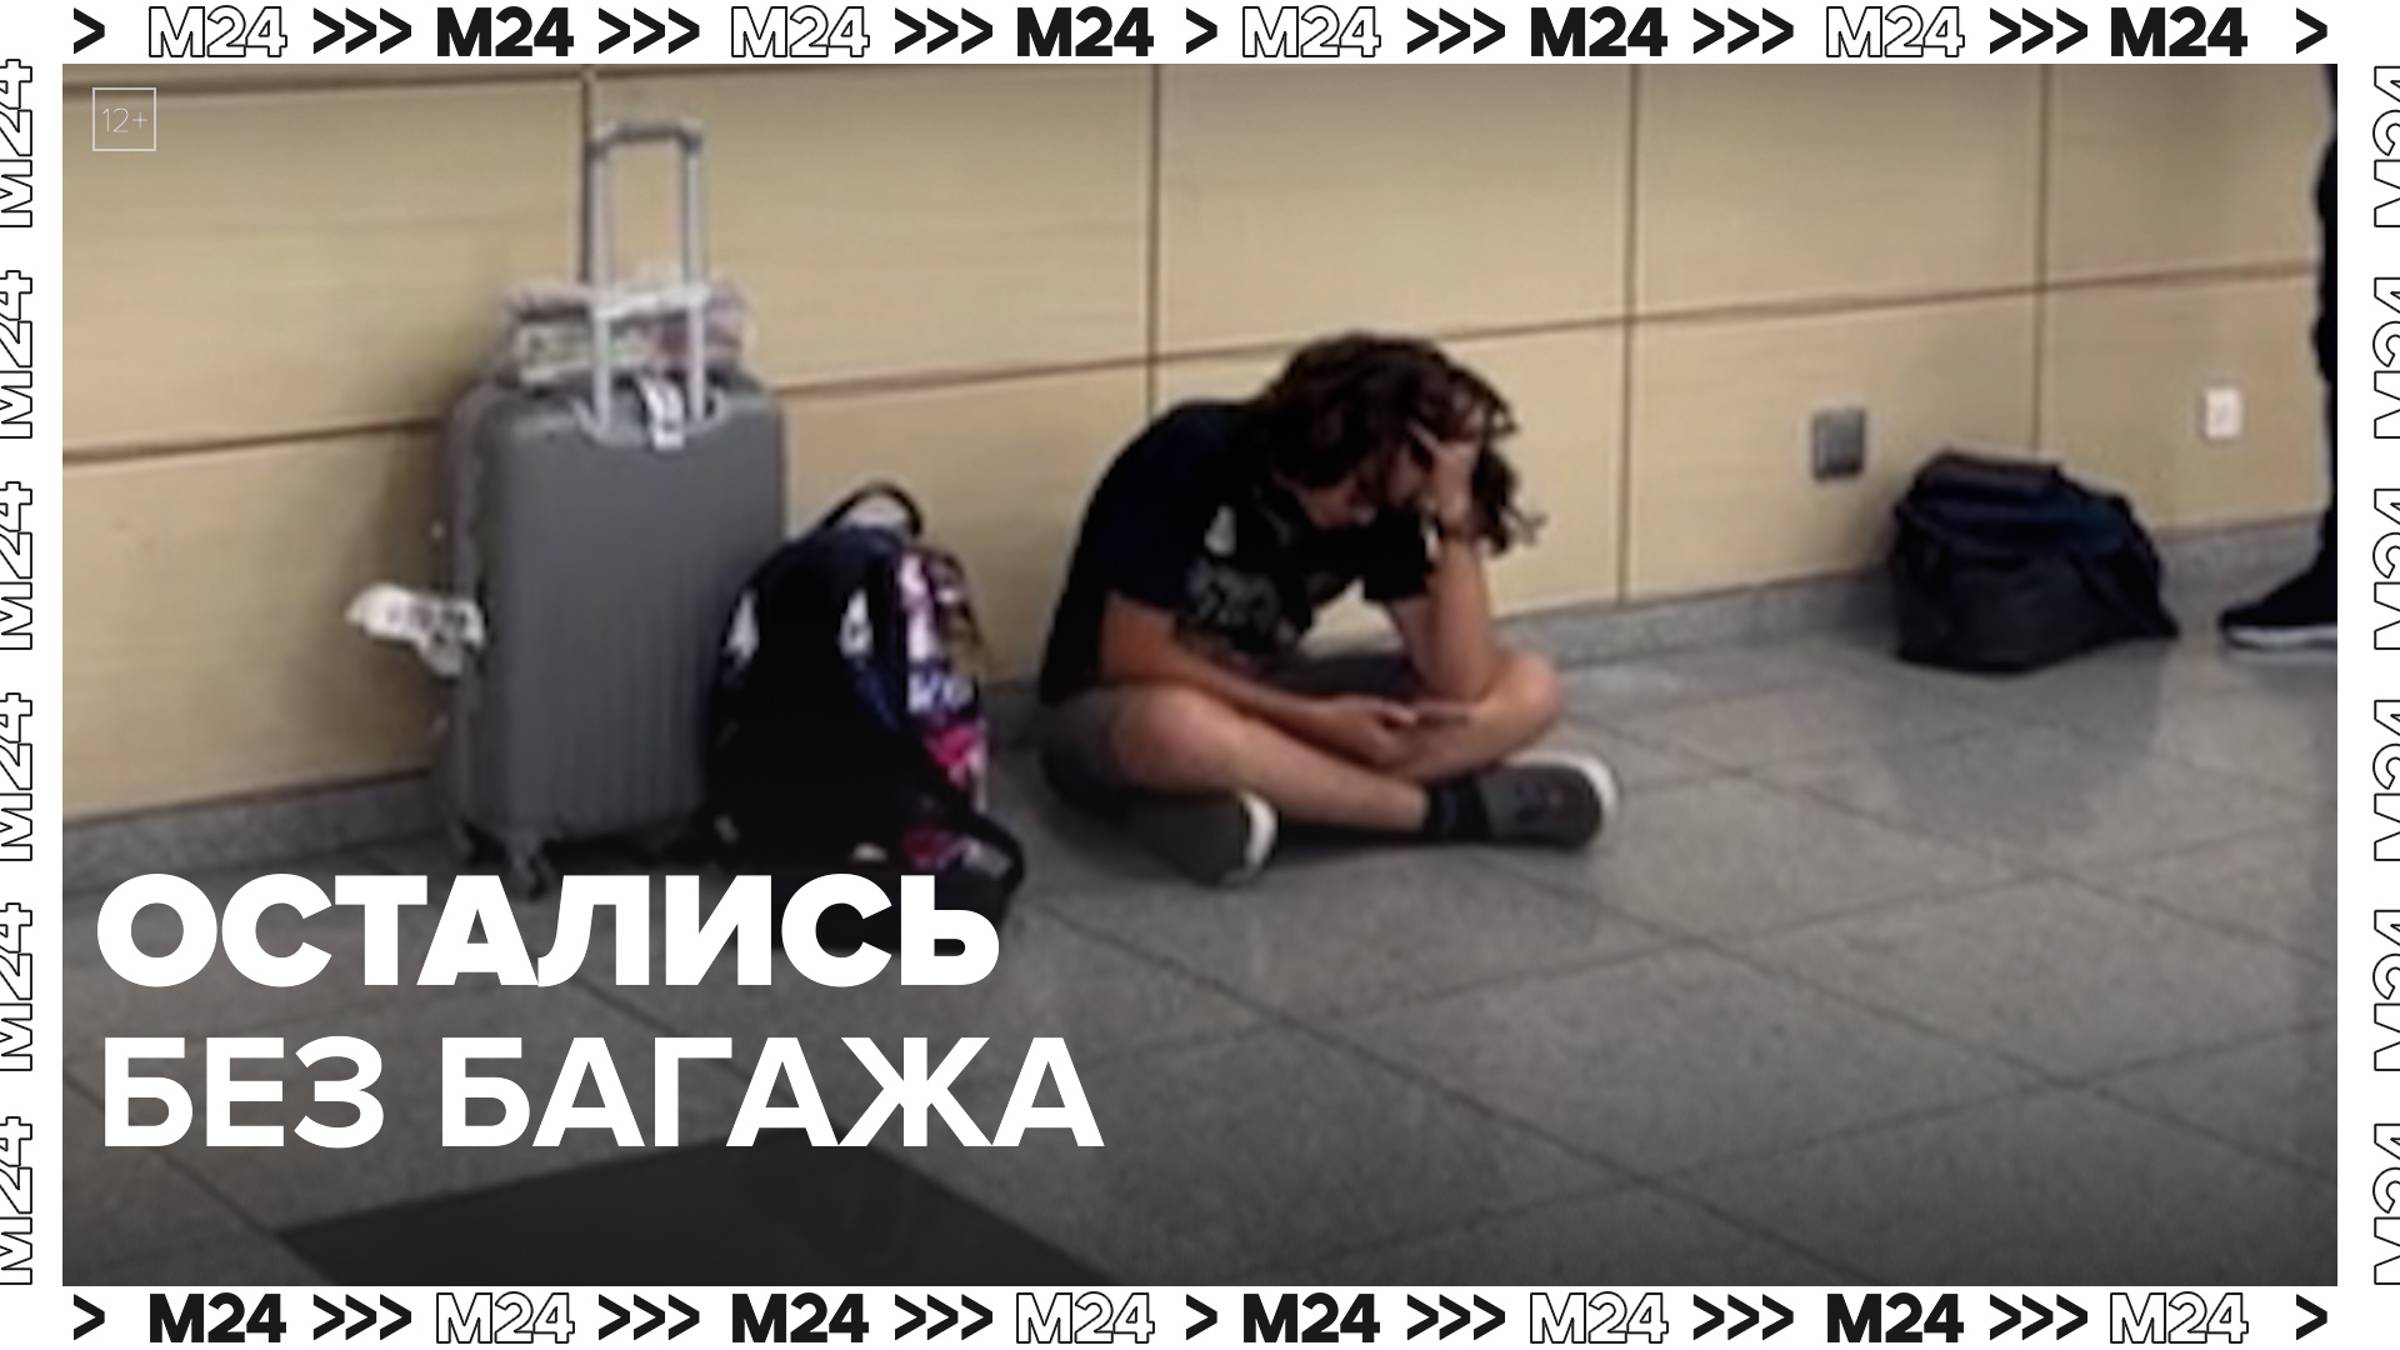 Москвичи остались без багажа после поездки в Марокко — Москва24|Контент